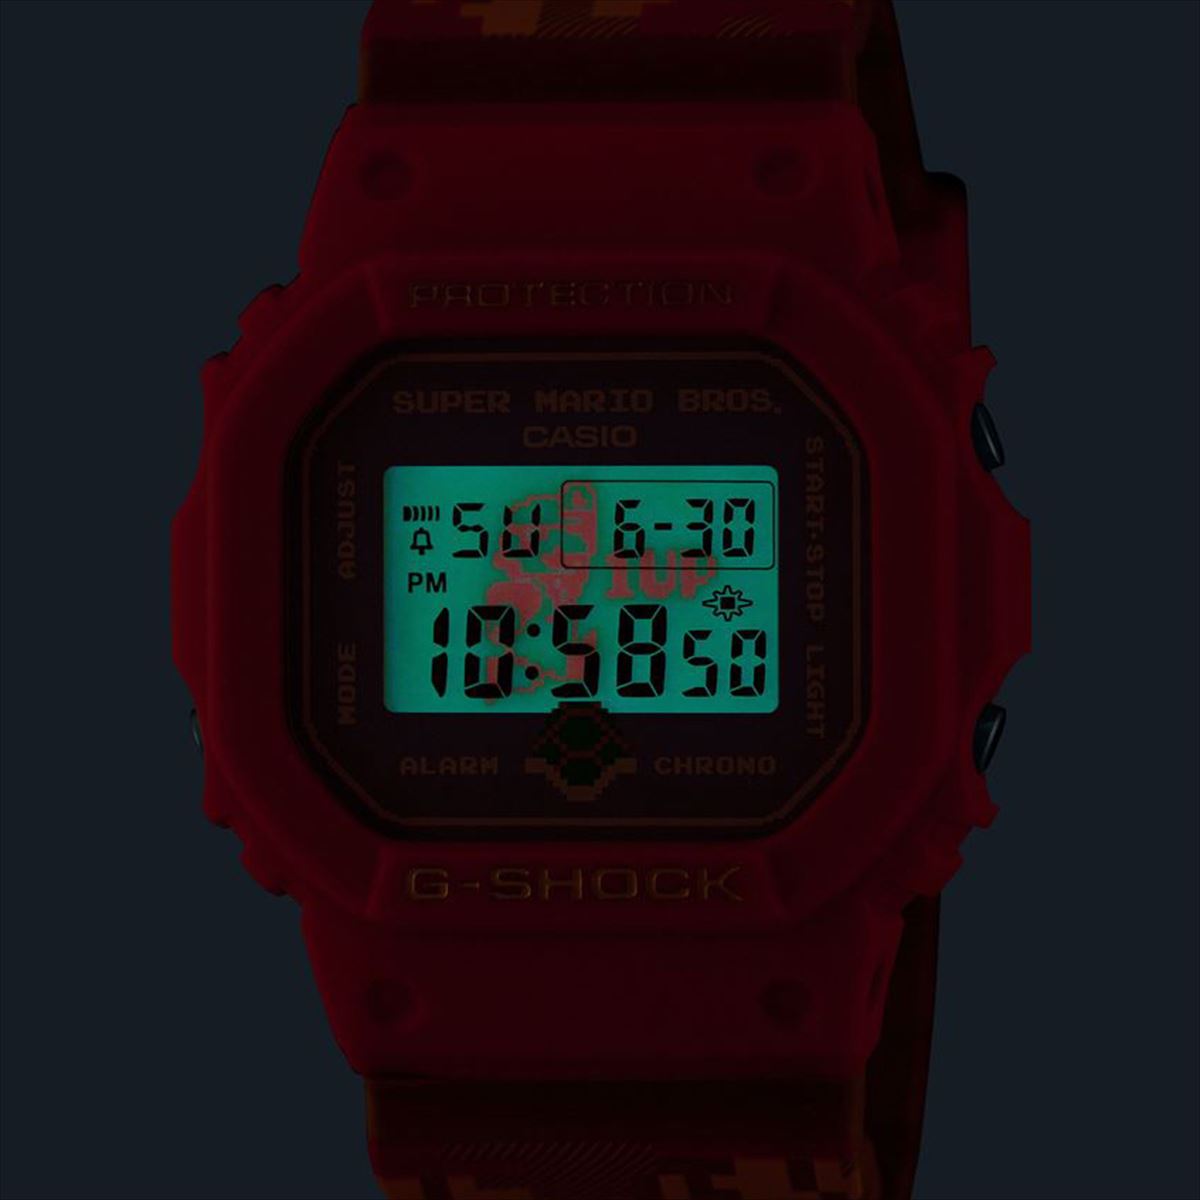 腕時計(デジタル)G-SHOCK DW-5600SMB-4JR スーパーマリオブラザーズコラボ